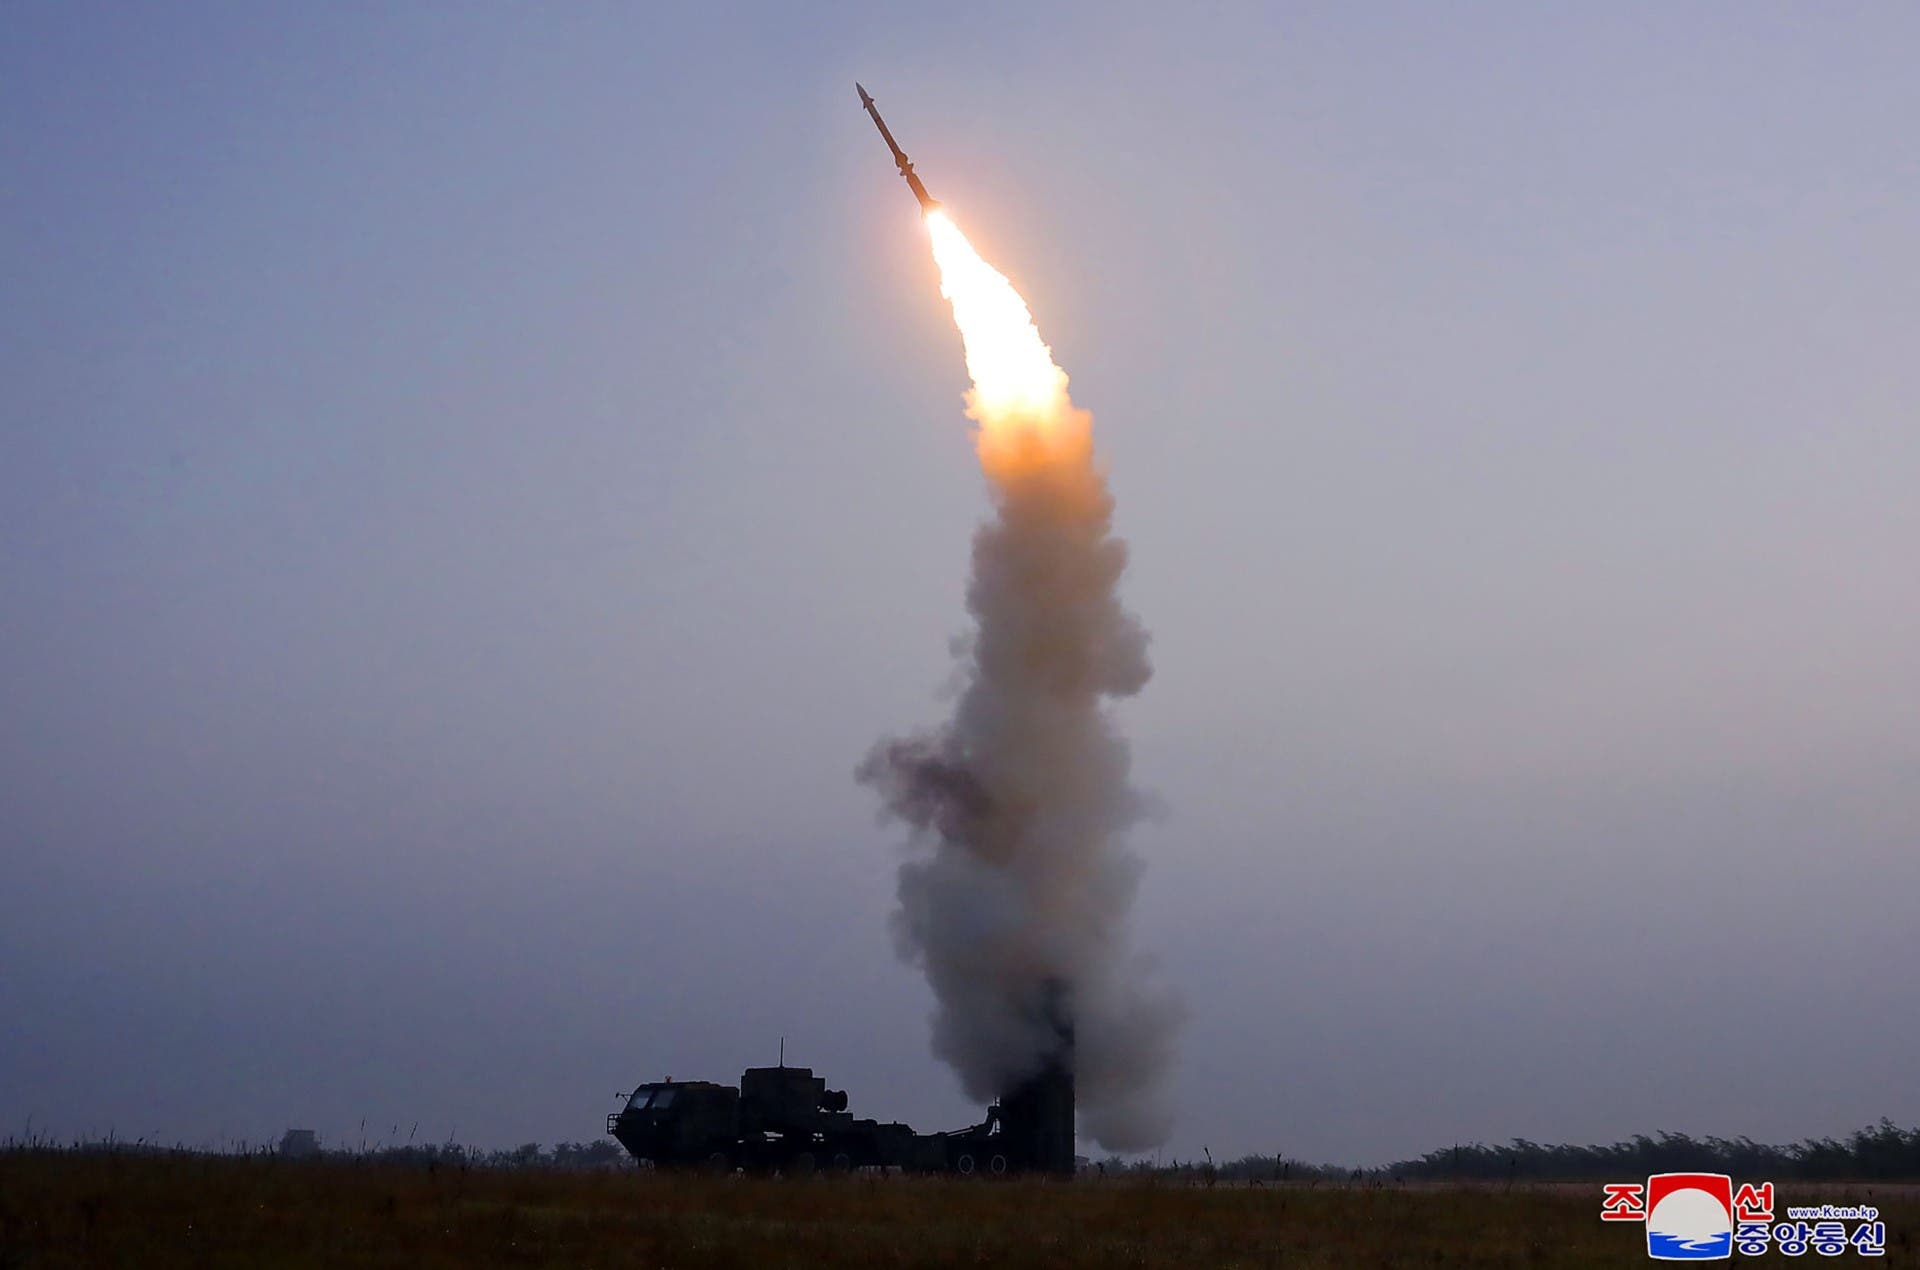 تجربة صاروخية أجرتها كوريا الشمالية في سبتمبر الماضي